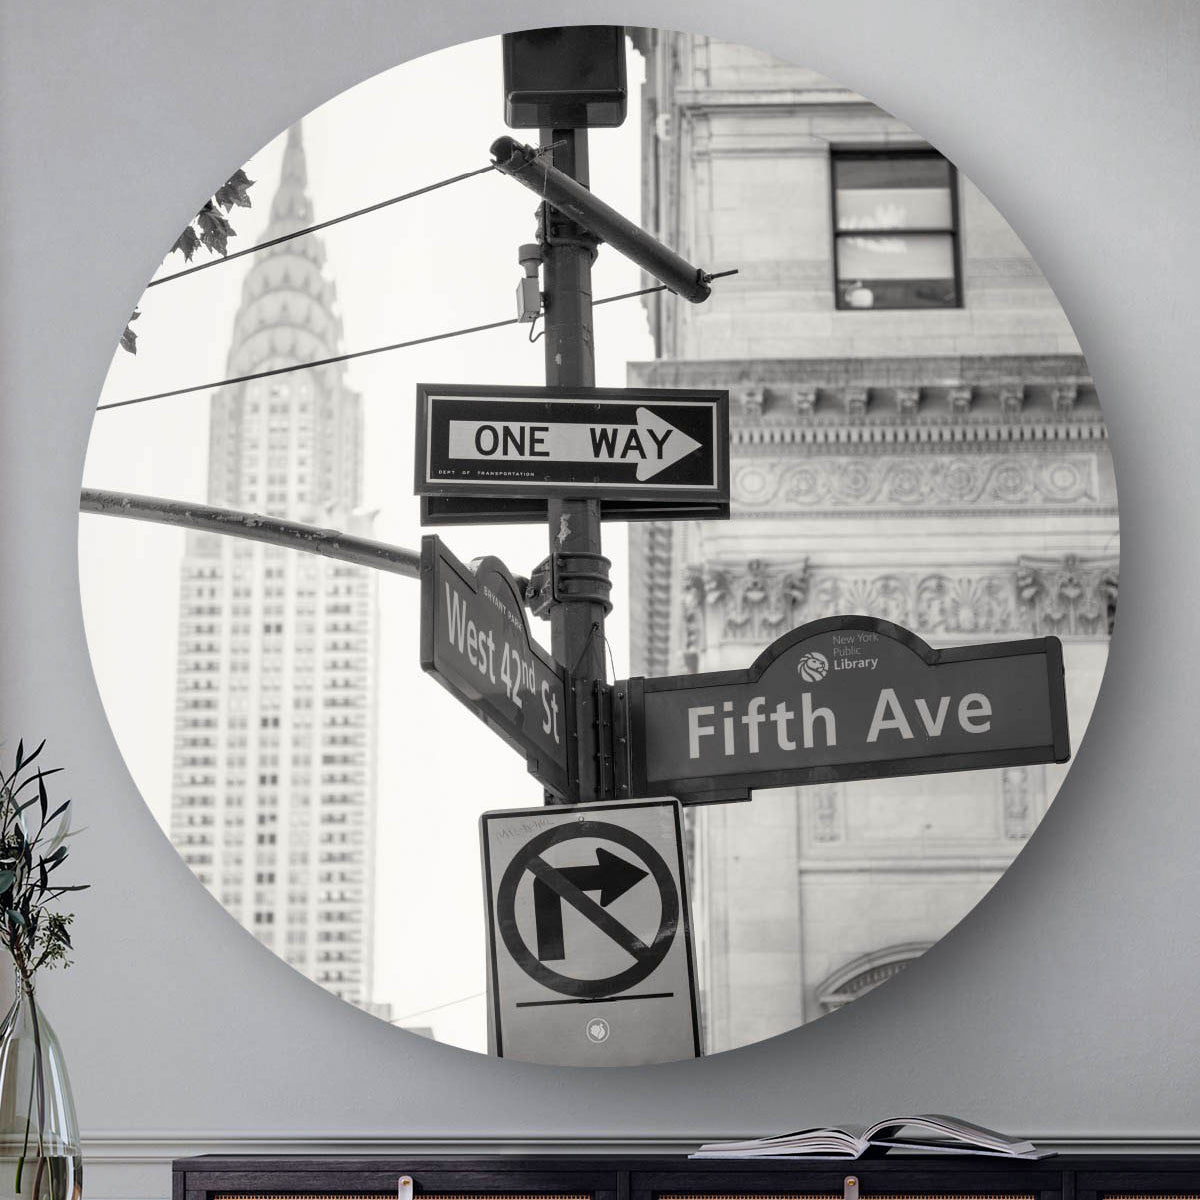 Wanddecoratie met verkeersbord van fifth avenue in New York, ook wel de Big Apple.